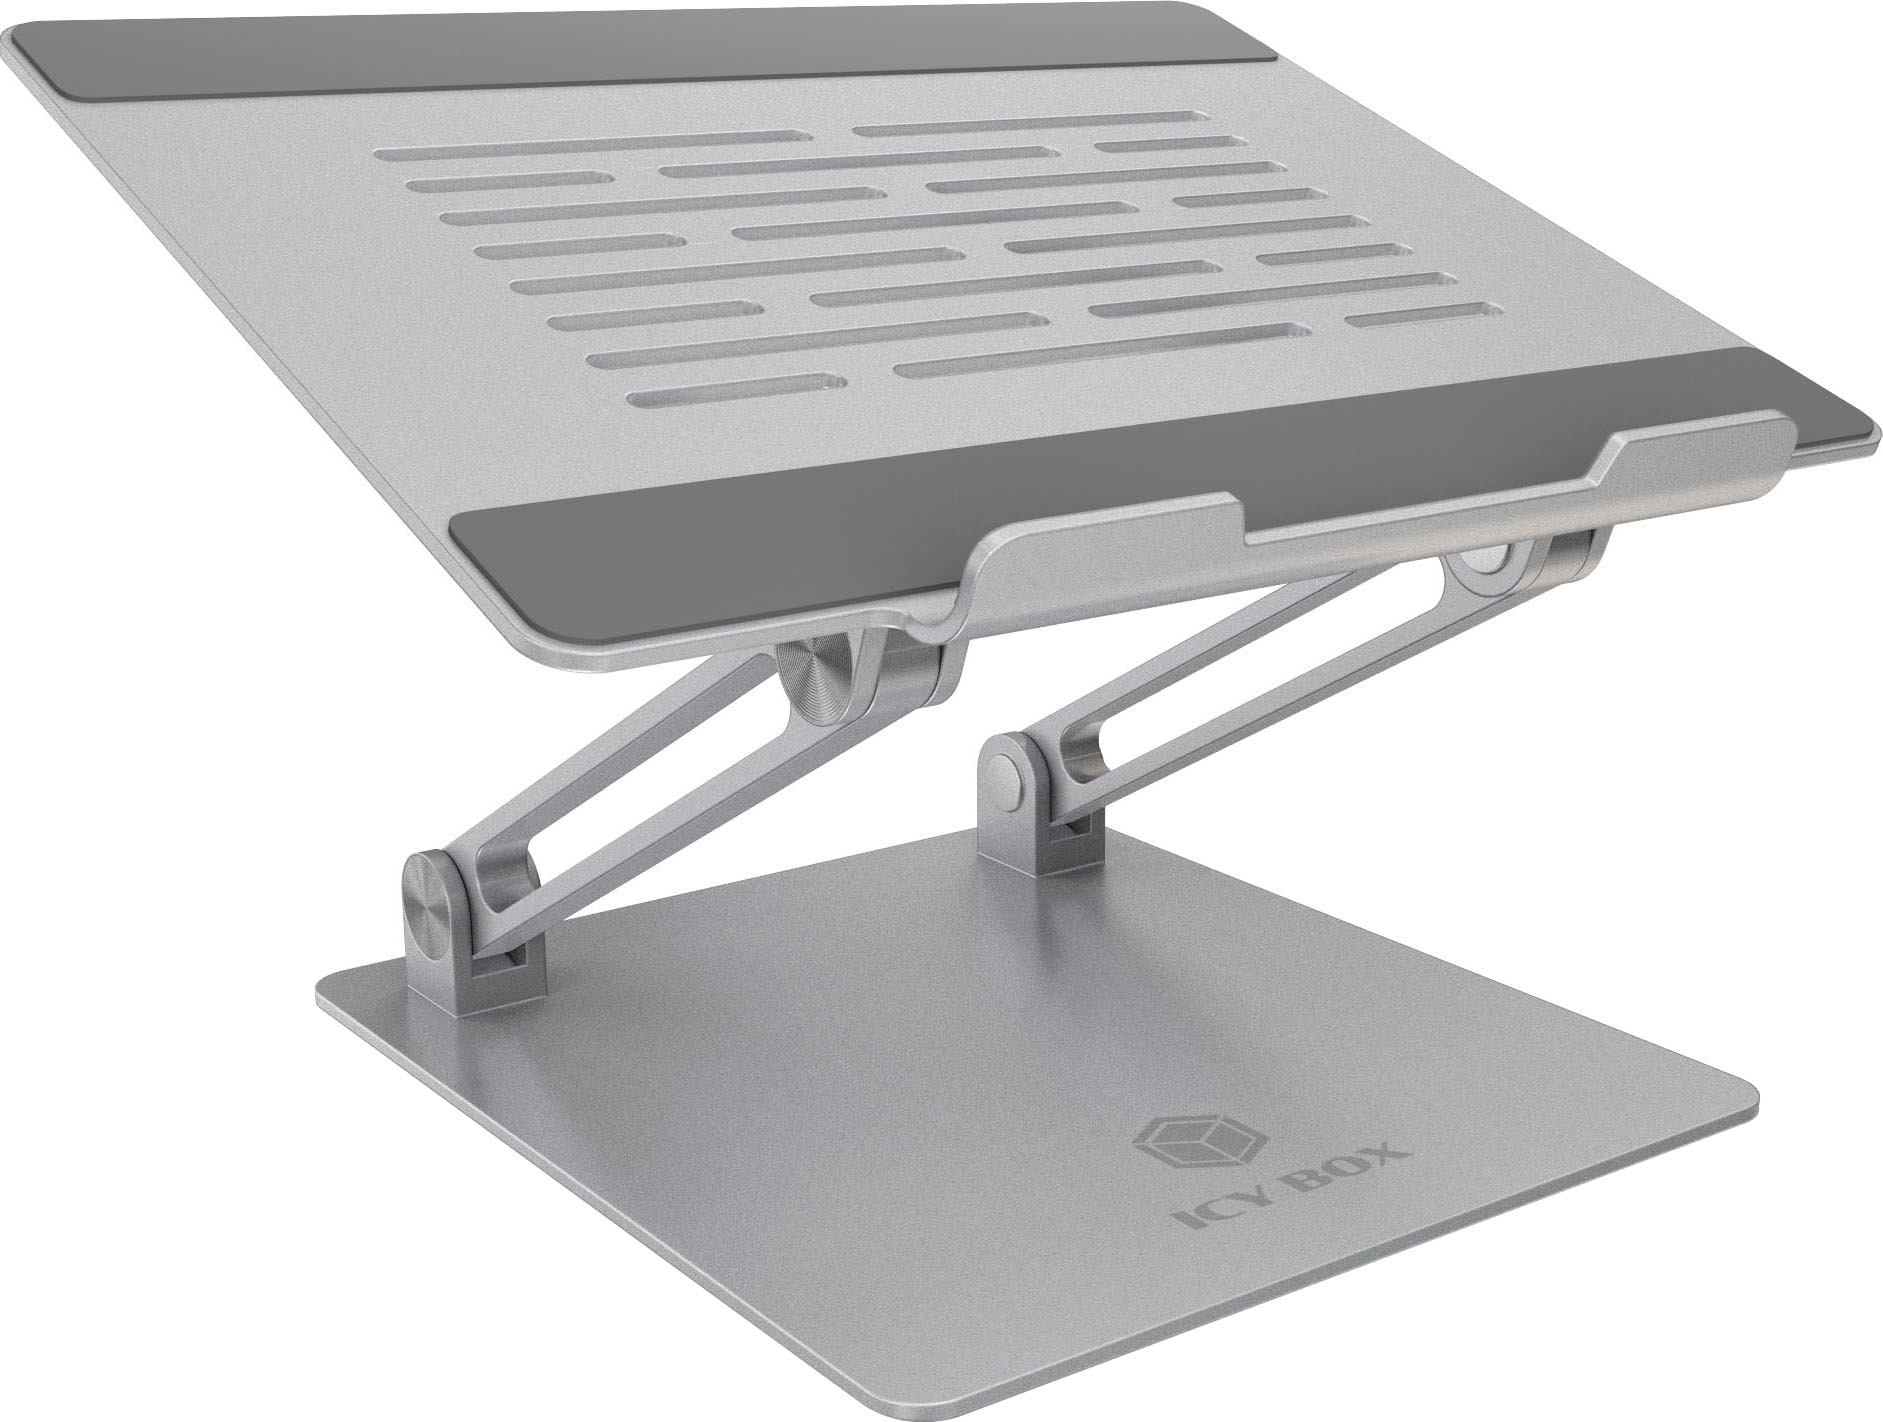 ICY BOX Laptop-Ständer »ICY BOX Notebookhalter für Notebooks bis 17«, höhenverstellbarer, freistehend